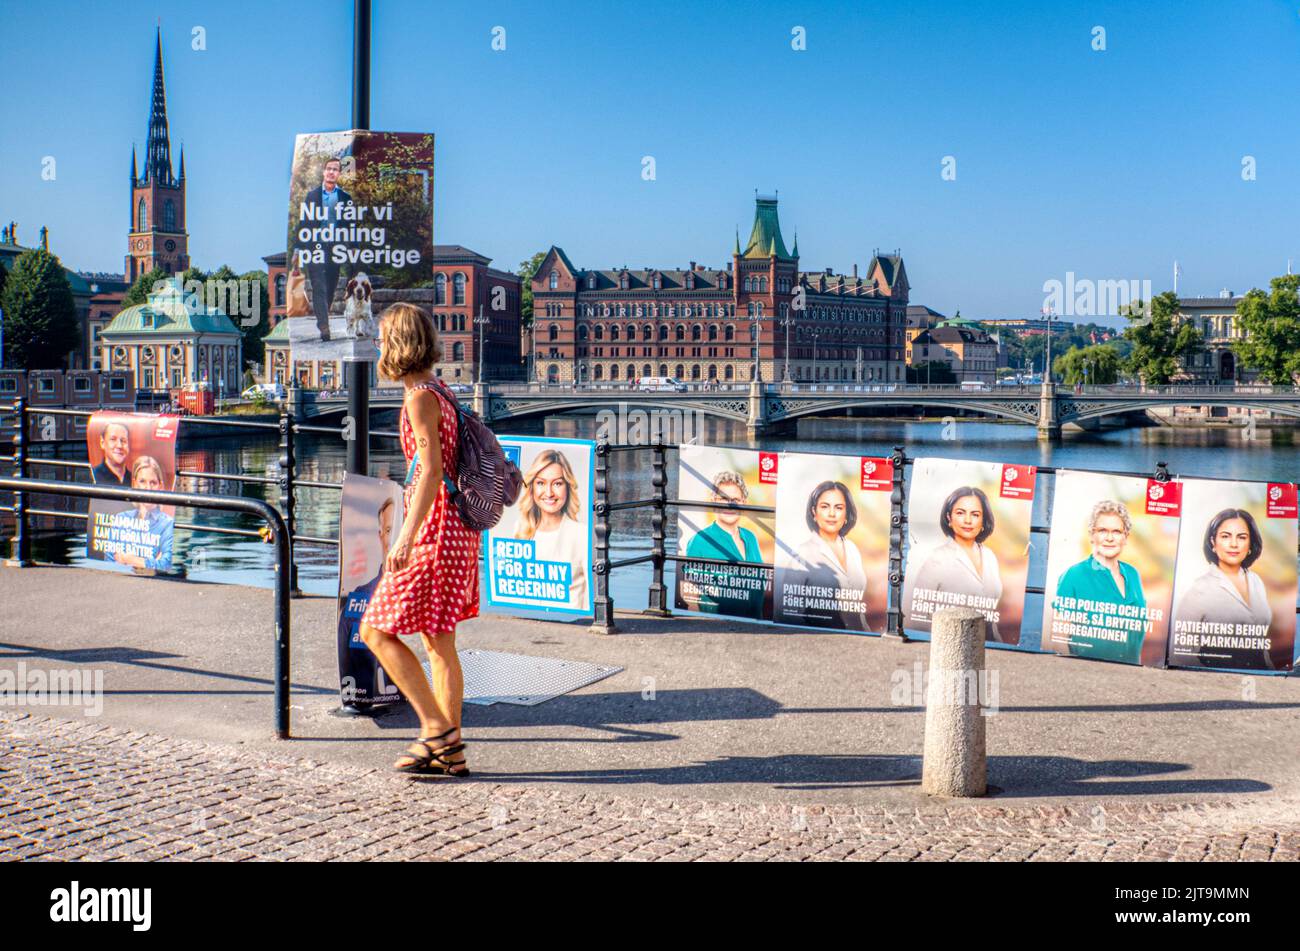 Política y elecciones suecas. Carteles políticos en un puente que conduce al parlamento sueco, Estocolmo, Suecia Foto de stock